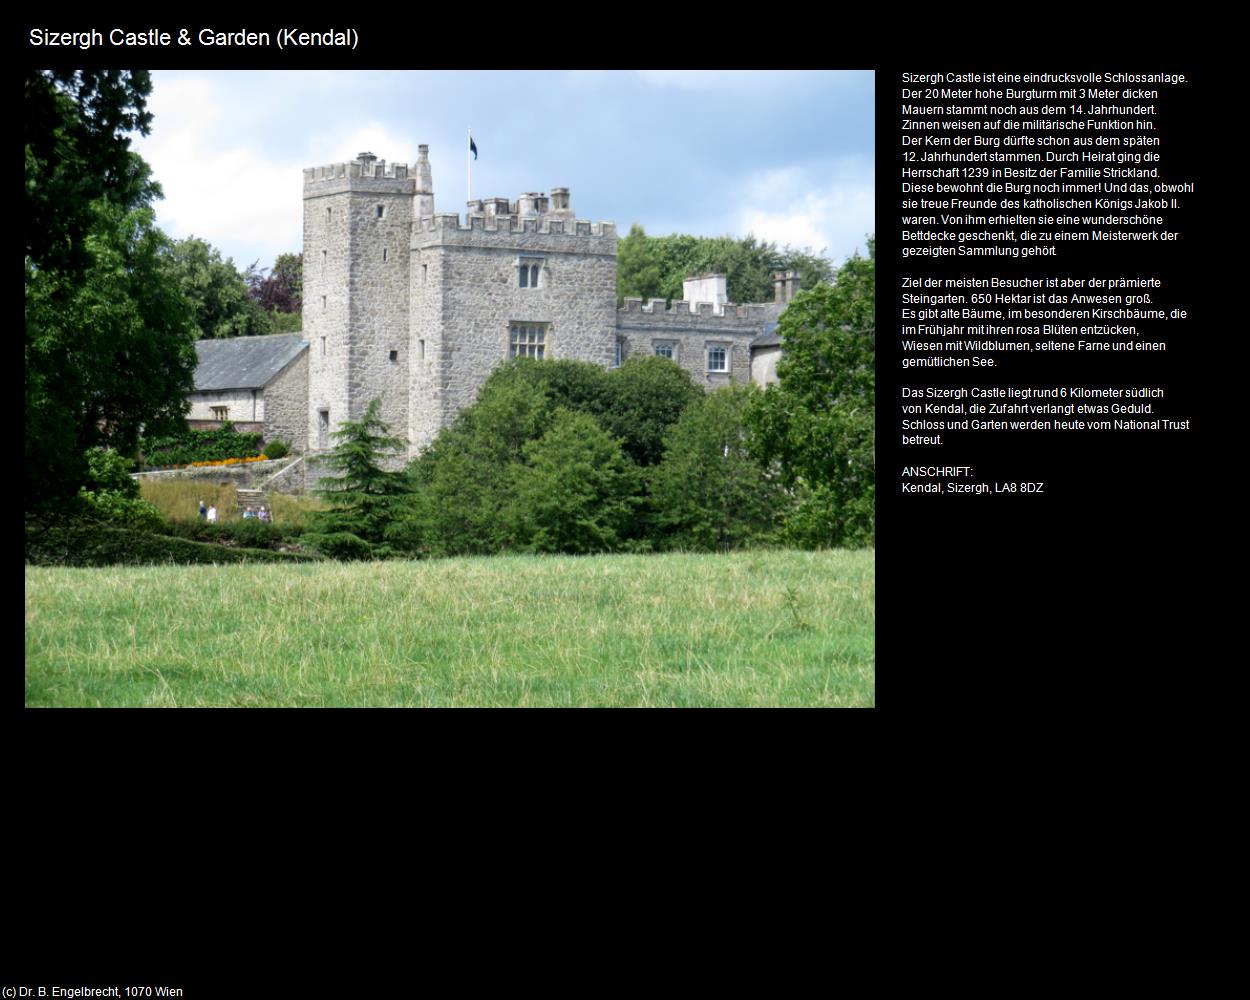 Sizergh Castle & Garden (Kendal, England ) in Kulturatlas-ENGLAND und WALES